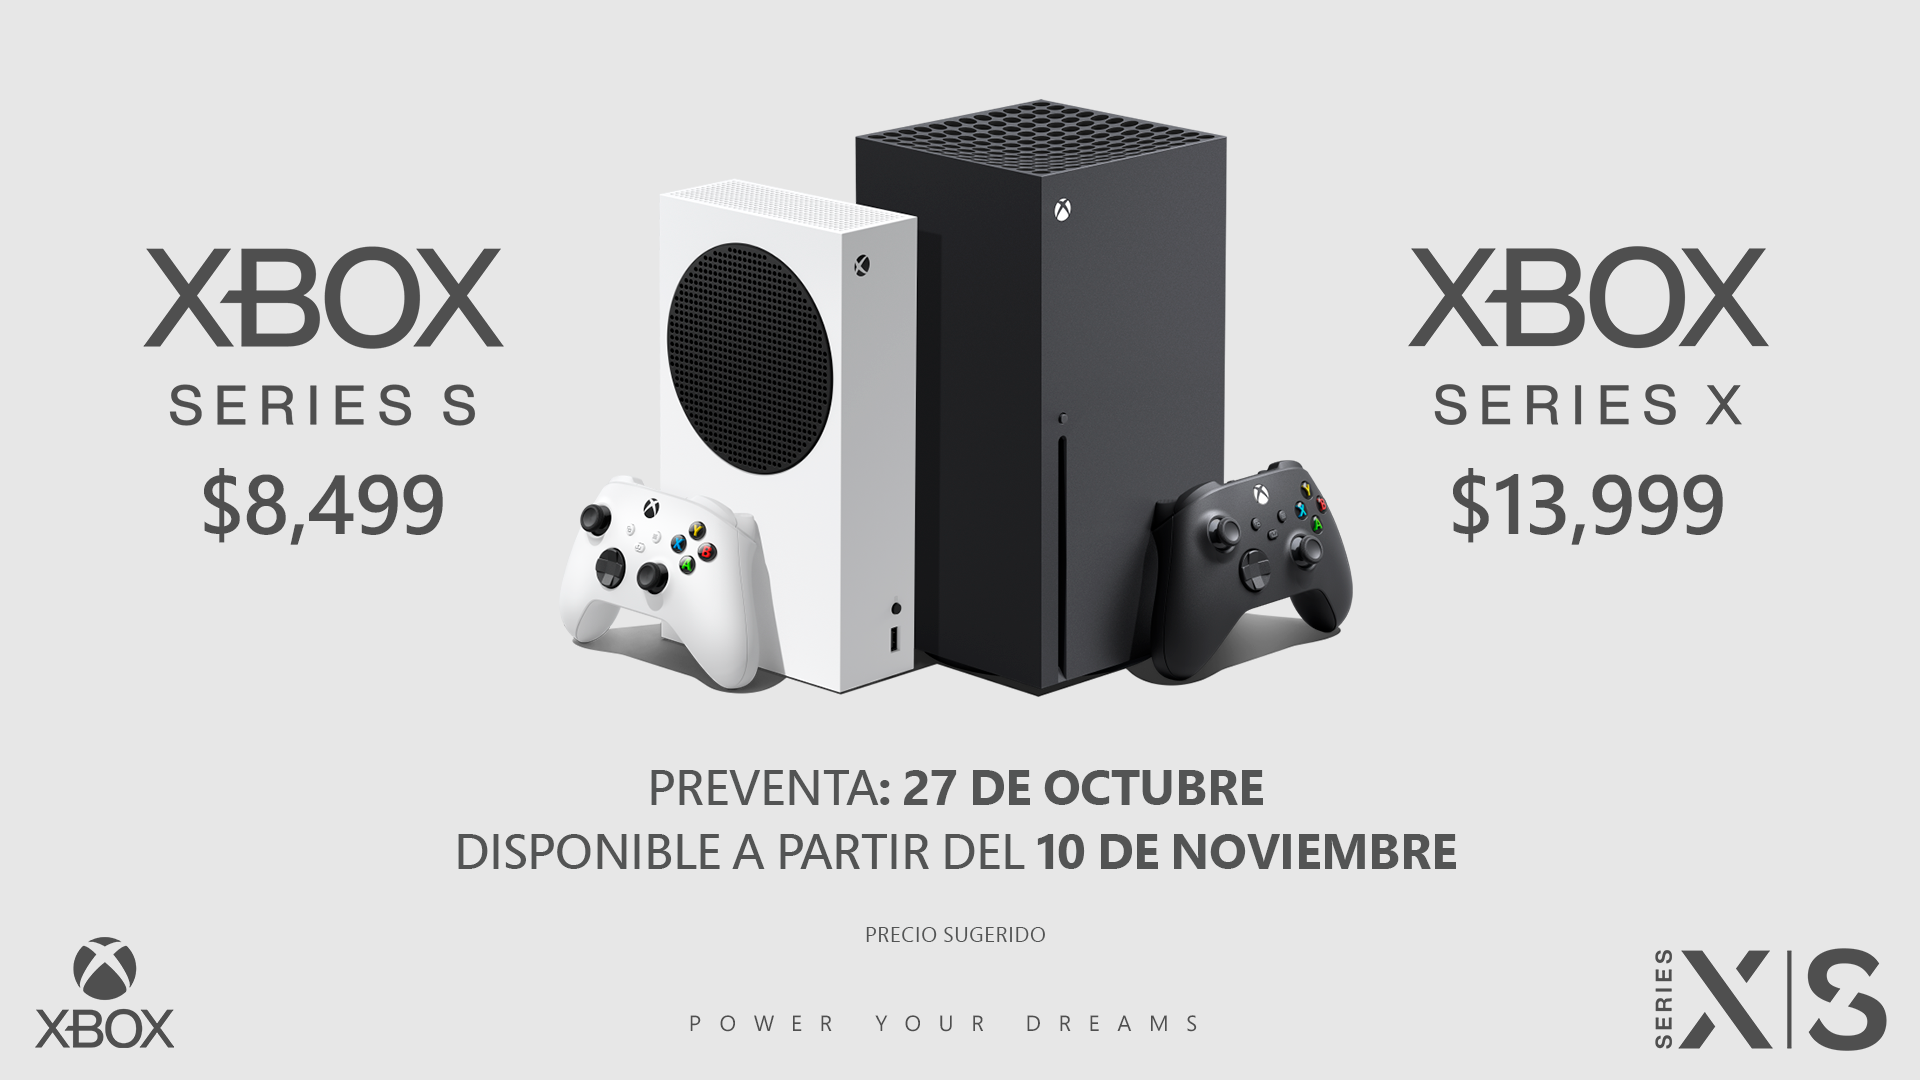 pueblo Nacional bulto La preventa en México de Xbox Series X y Xbox Series S comienza a partir  del martes 27 de octubre - Xbox Wire en Español